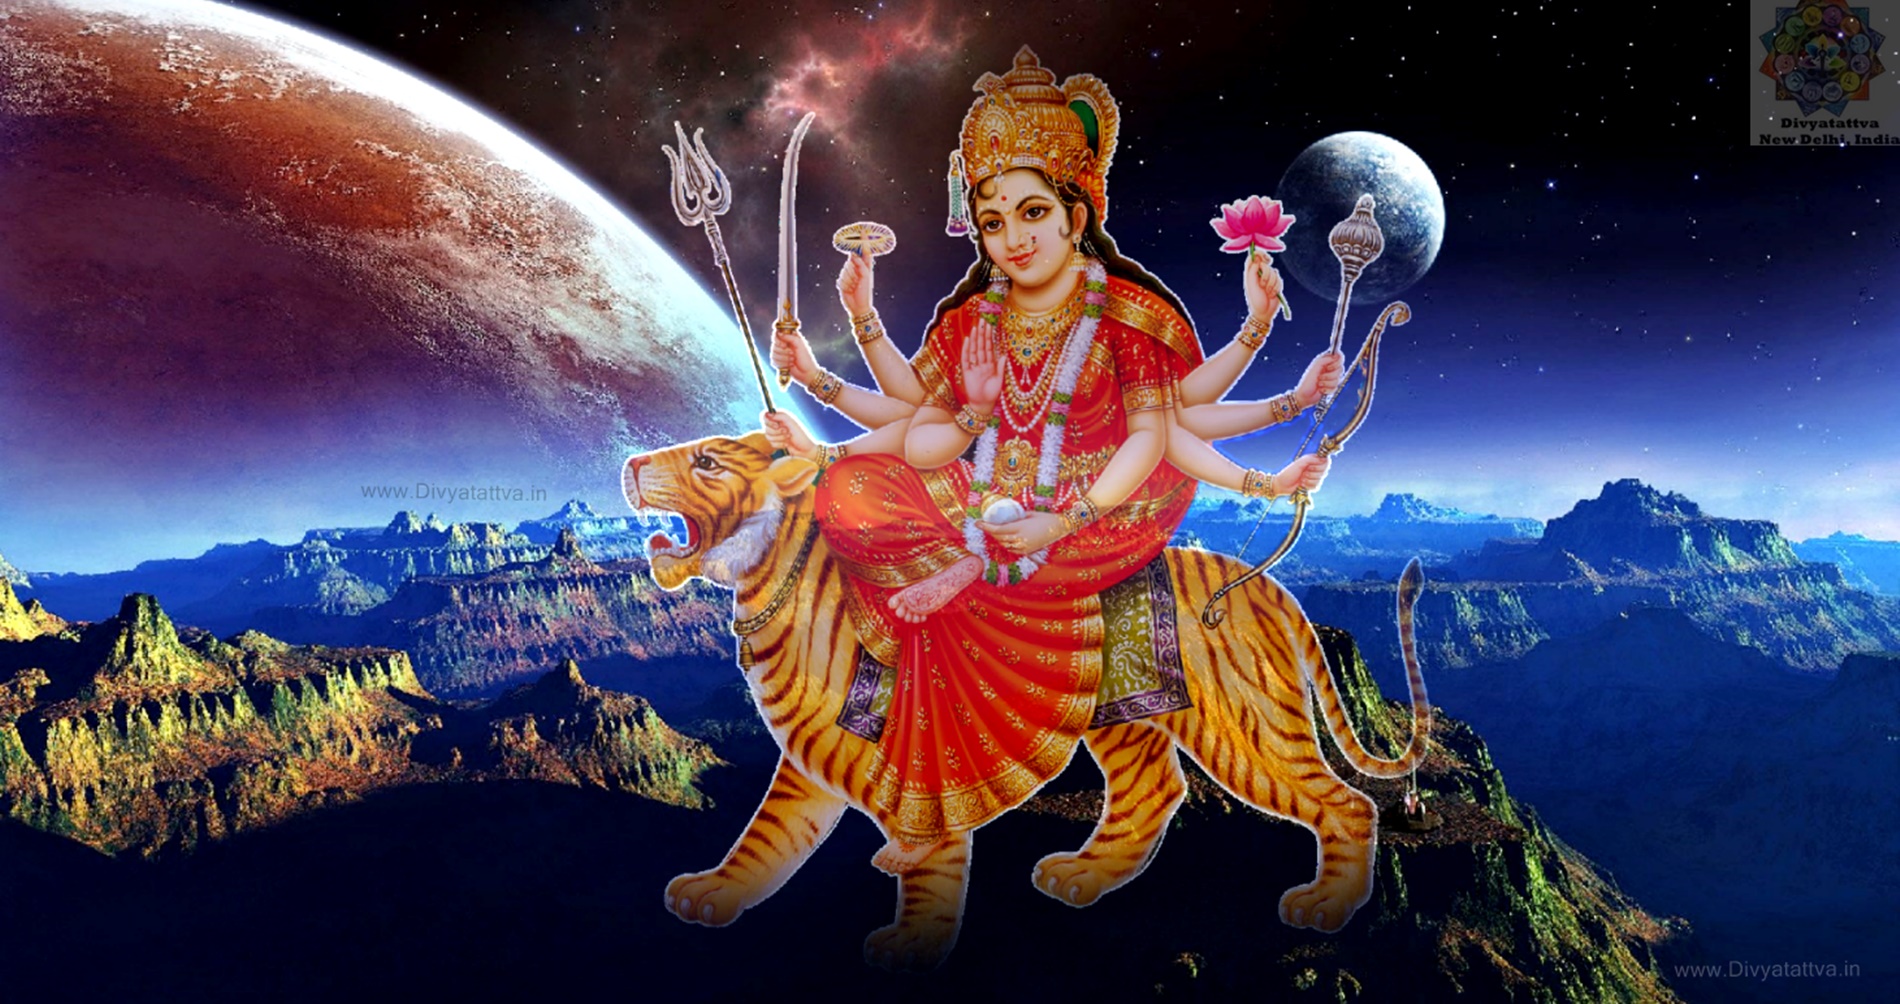 Durga Goddess 4K UHD Wallpaper, Durga Puja Images for Navratri Festival